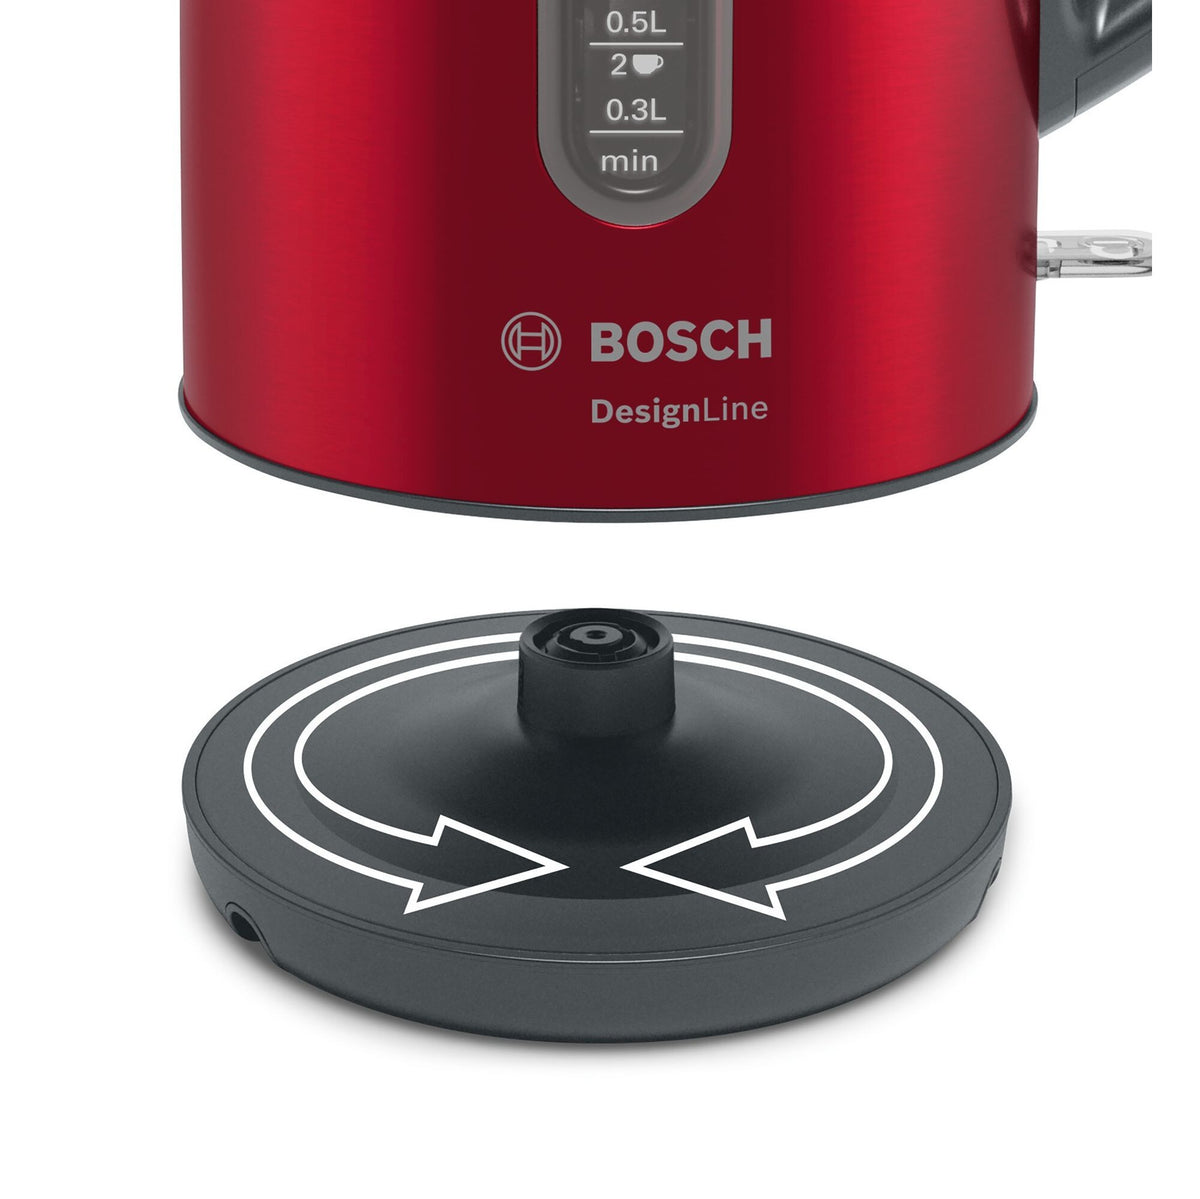 Rýchlovarná kanvica Bosch TWK4P434, červená, 1,7l